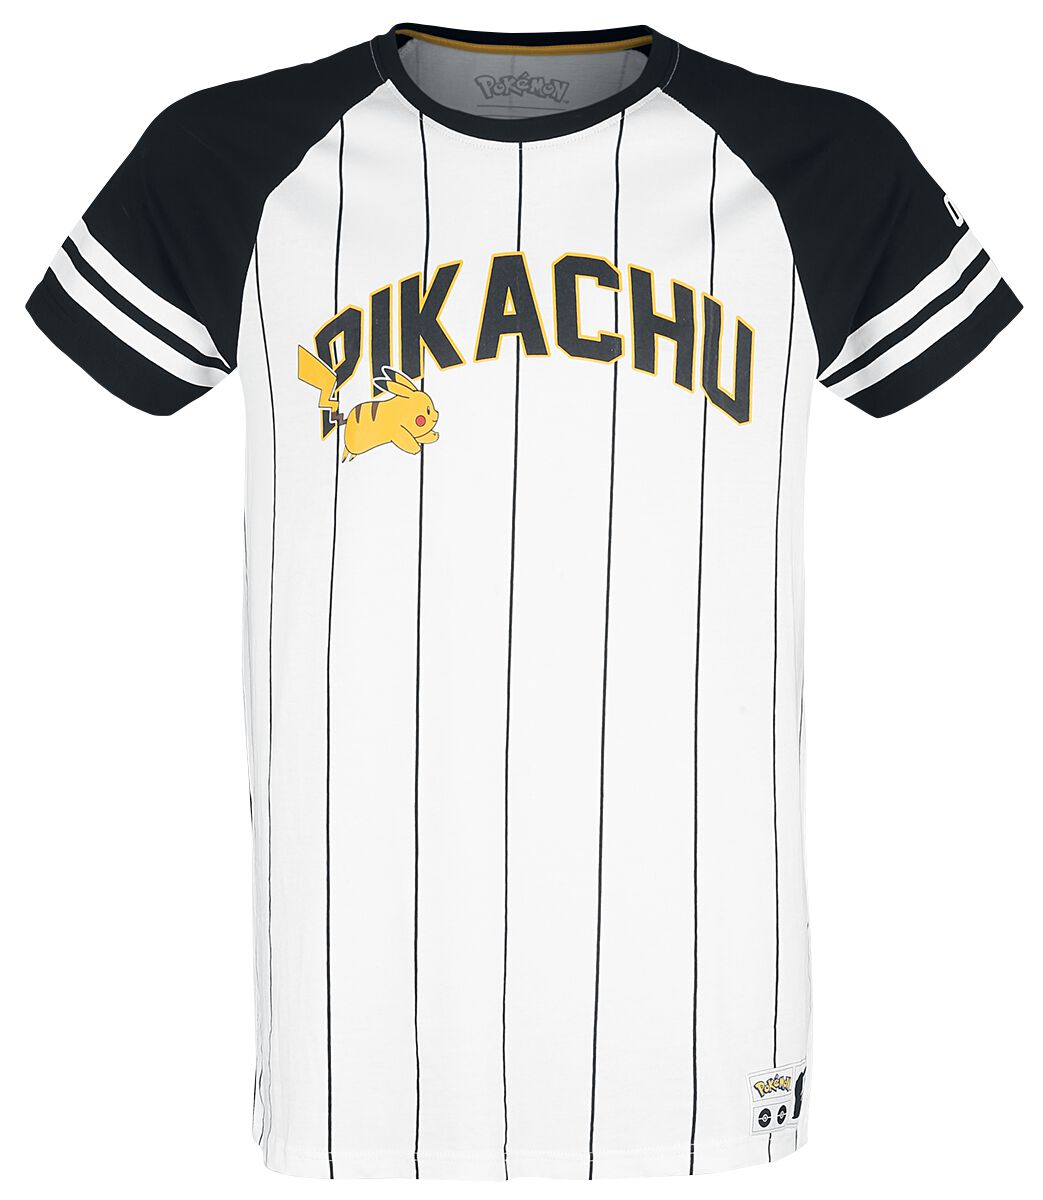 Pokémon Pikachu - Running T-Shirt black white